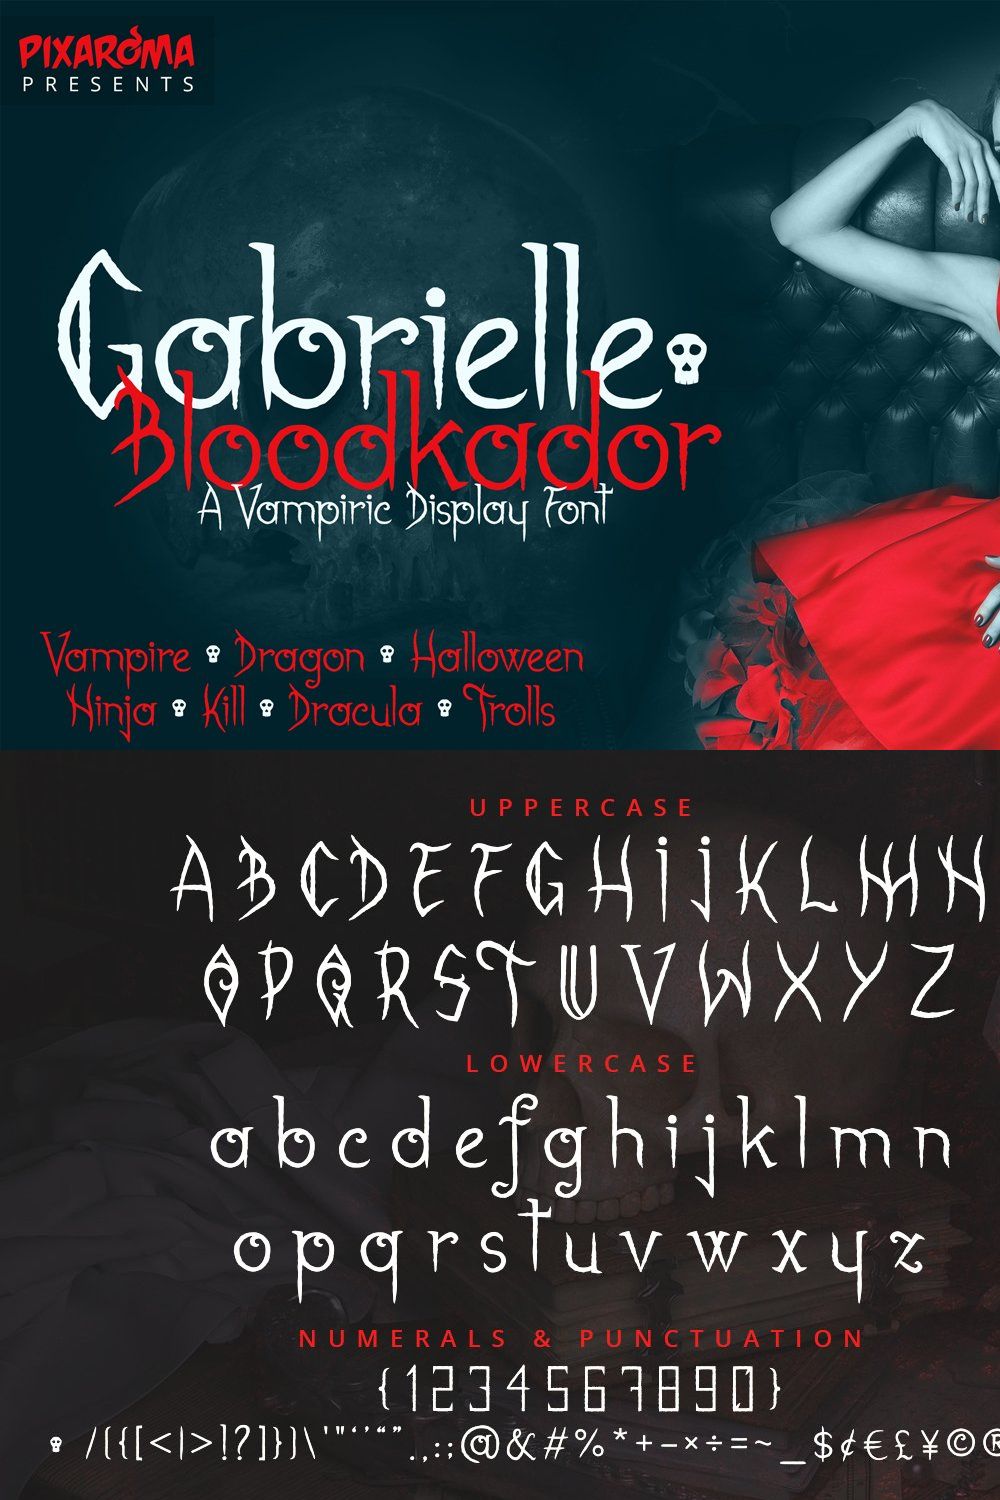 Gabrielle Bloodkador Font pinterest preview image.